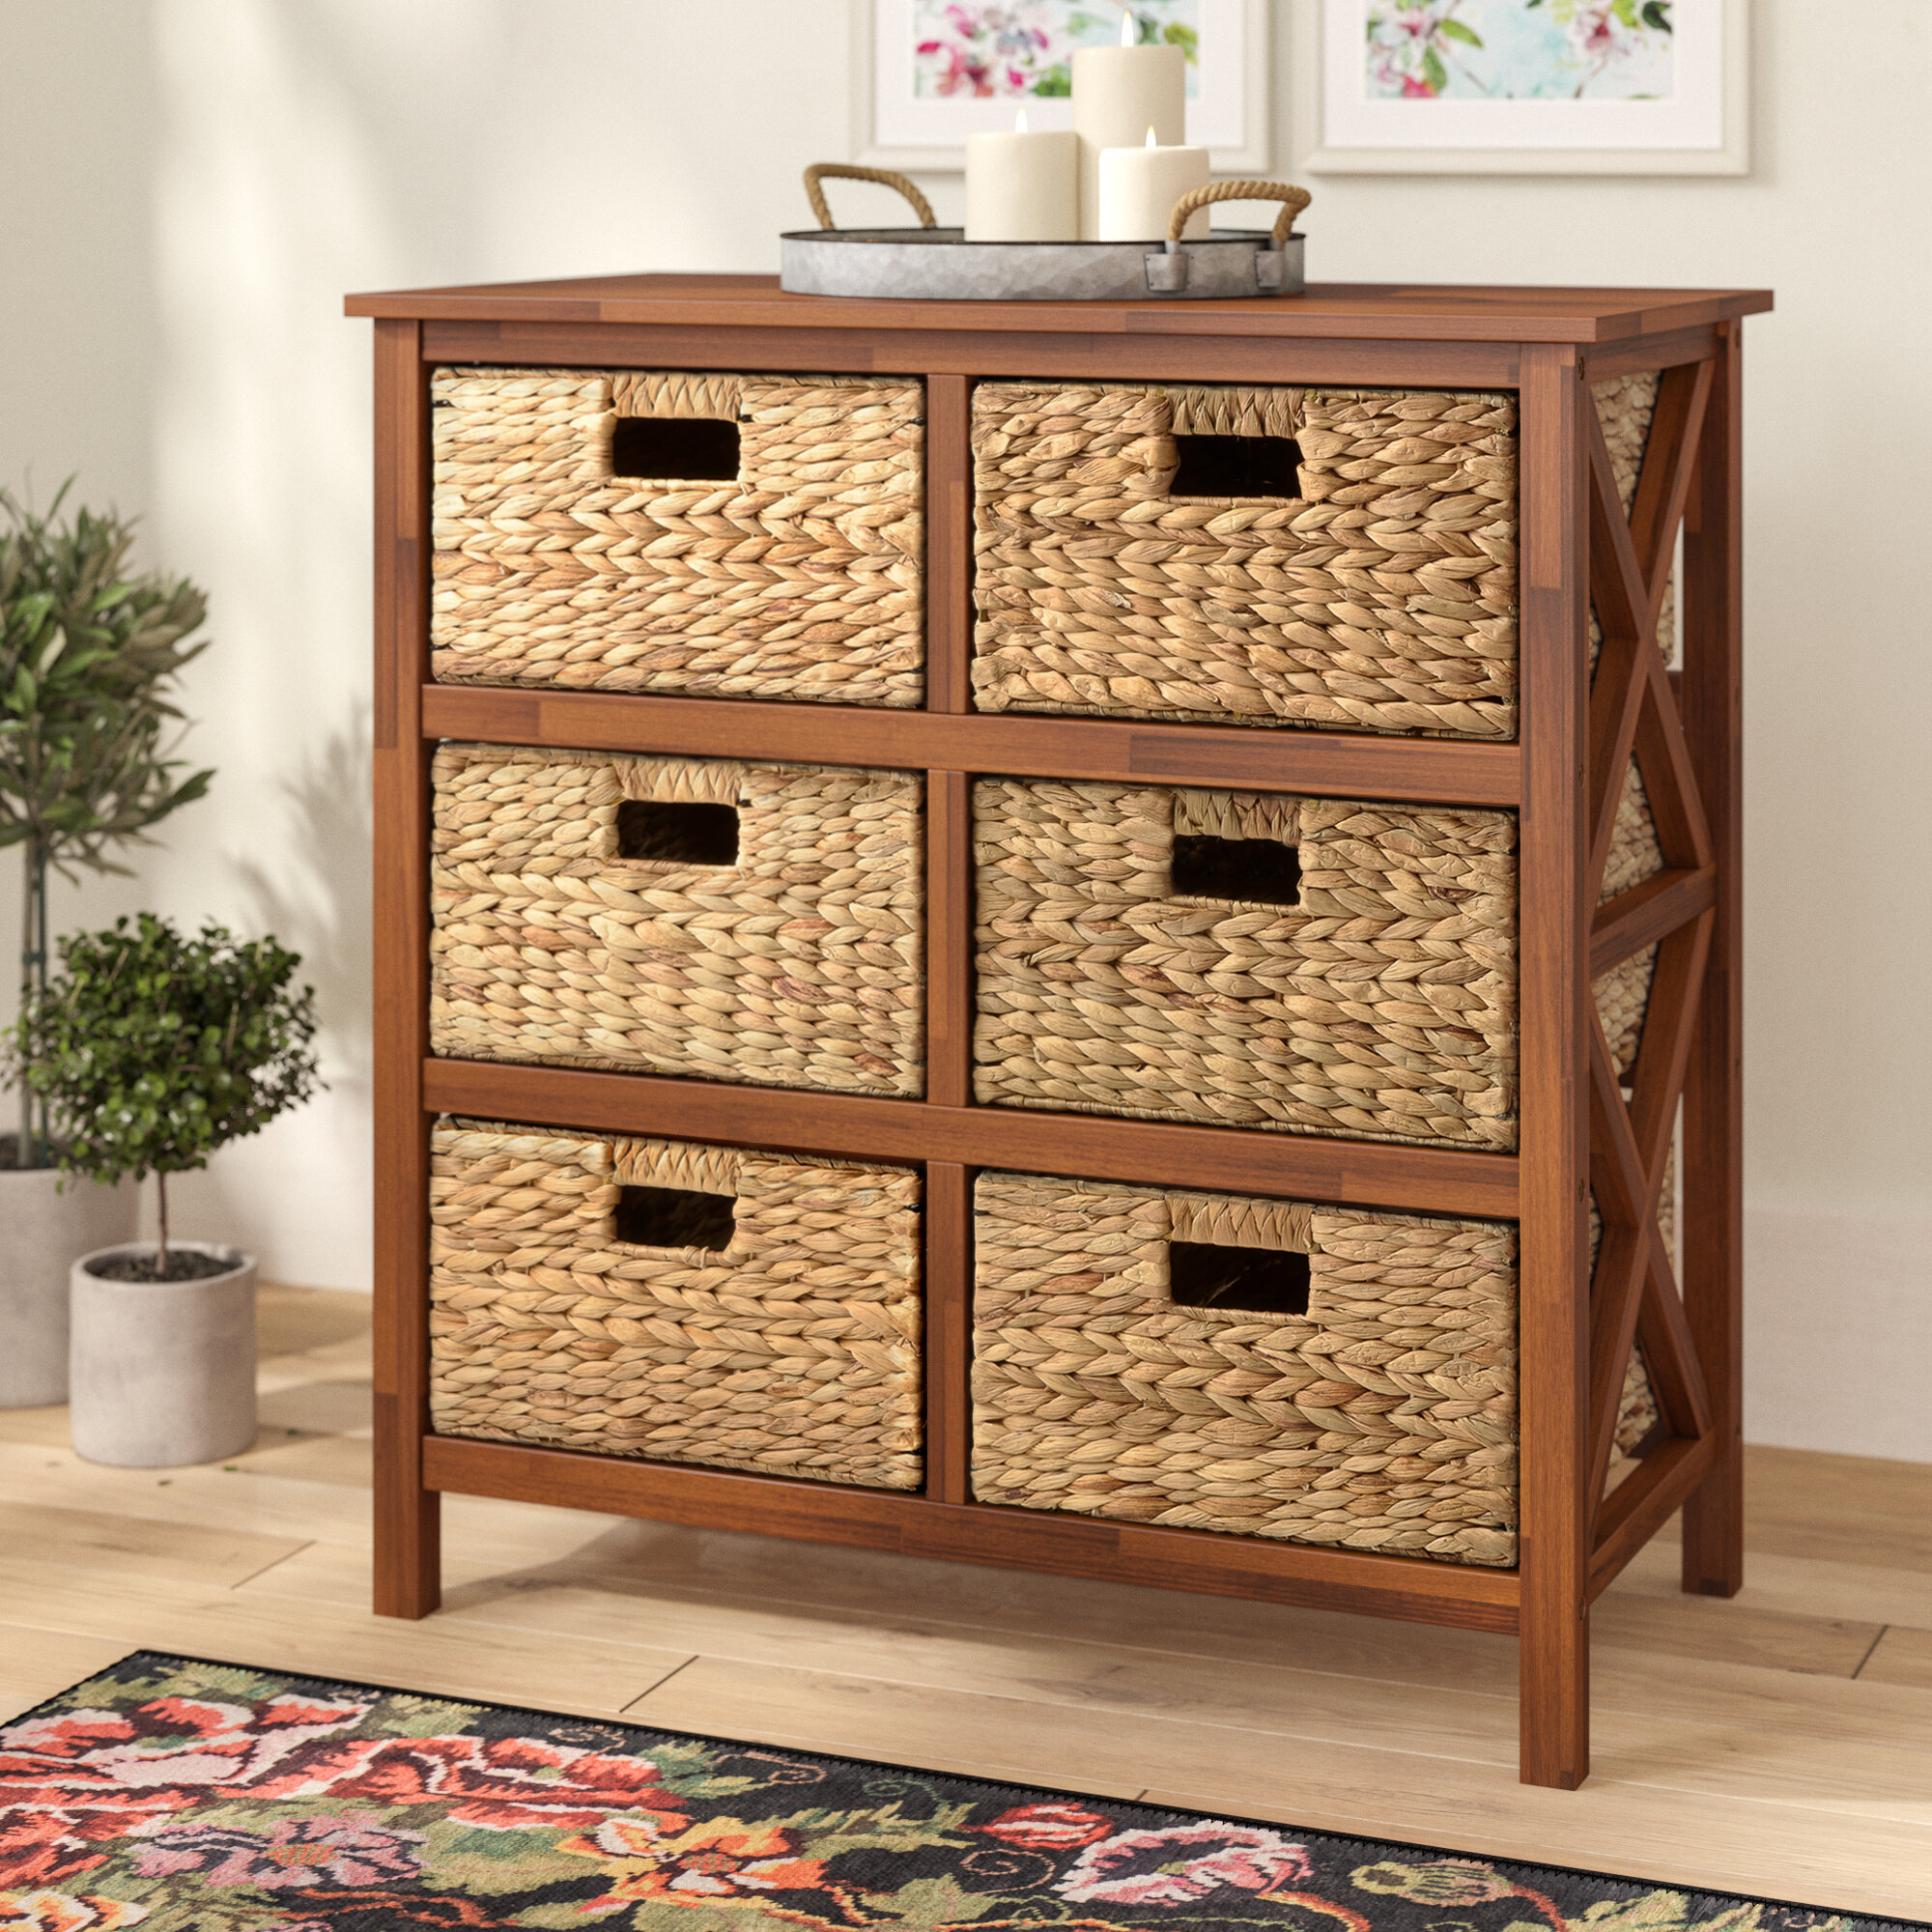 3 Drawers Unit Wicker Baskets Storage Organizer Chest Cabinet Cupboard Furniture 